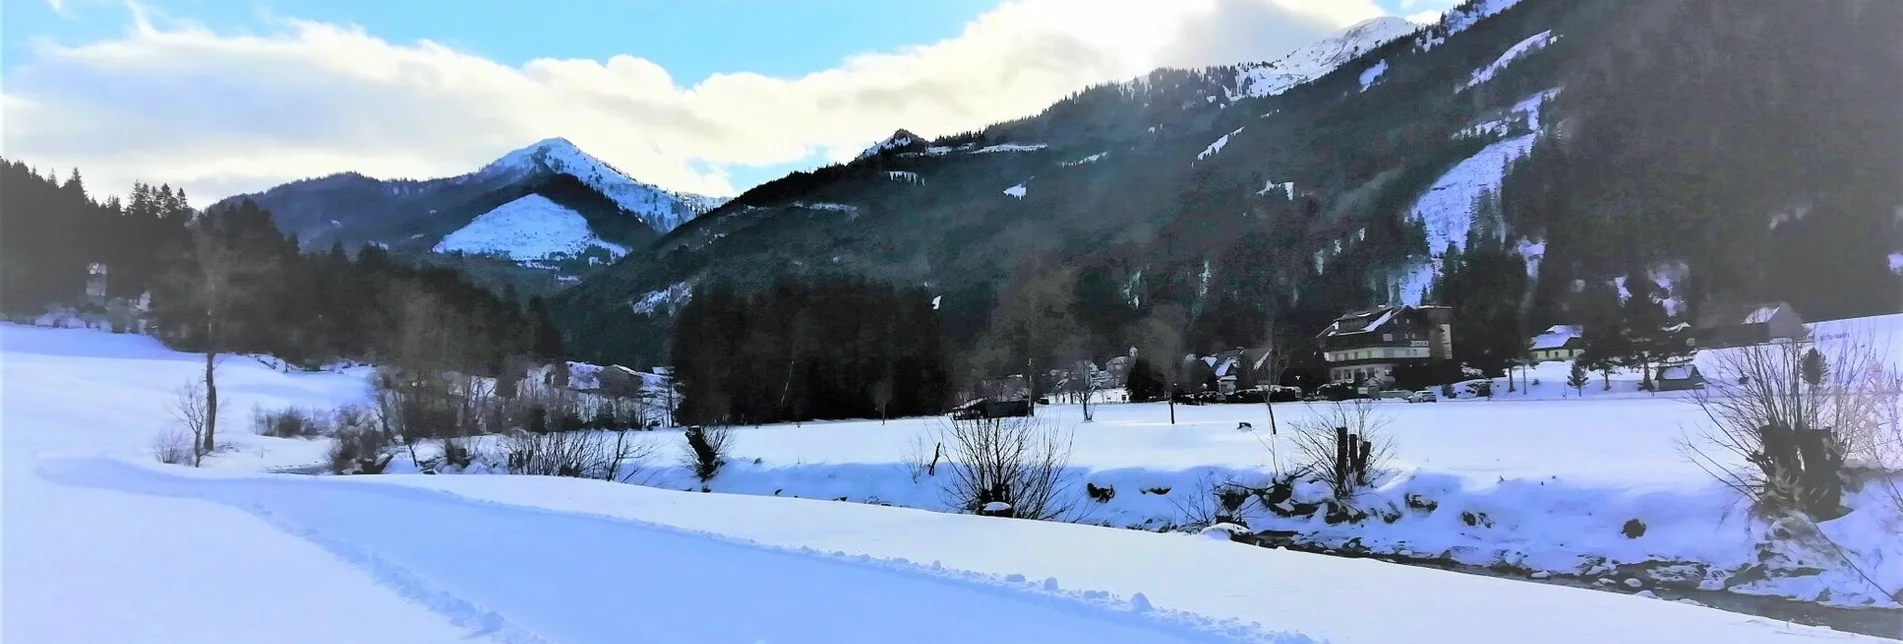 Cross-Country Skiing Loipe Vorderwald - Touren-Impression #1 | © Erlebnisregion Schladming-Dachstein